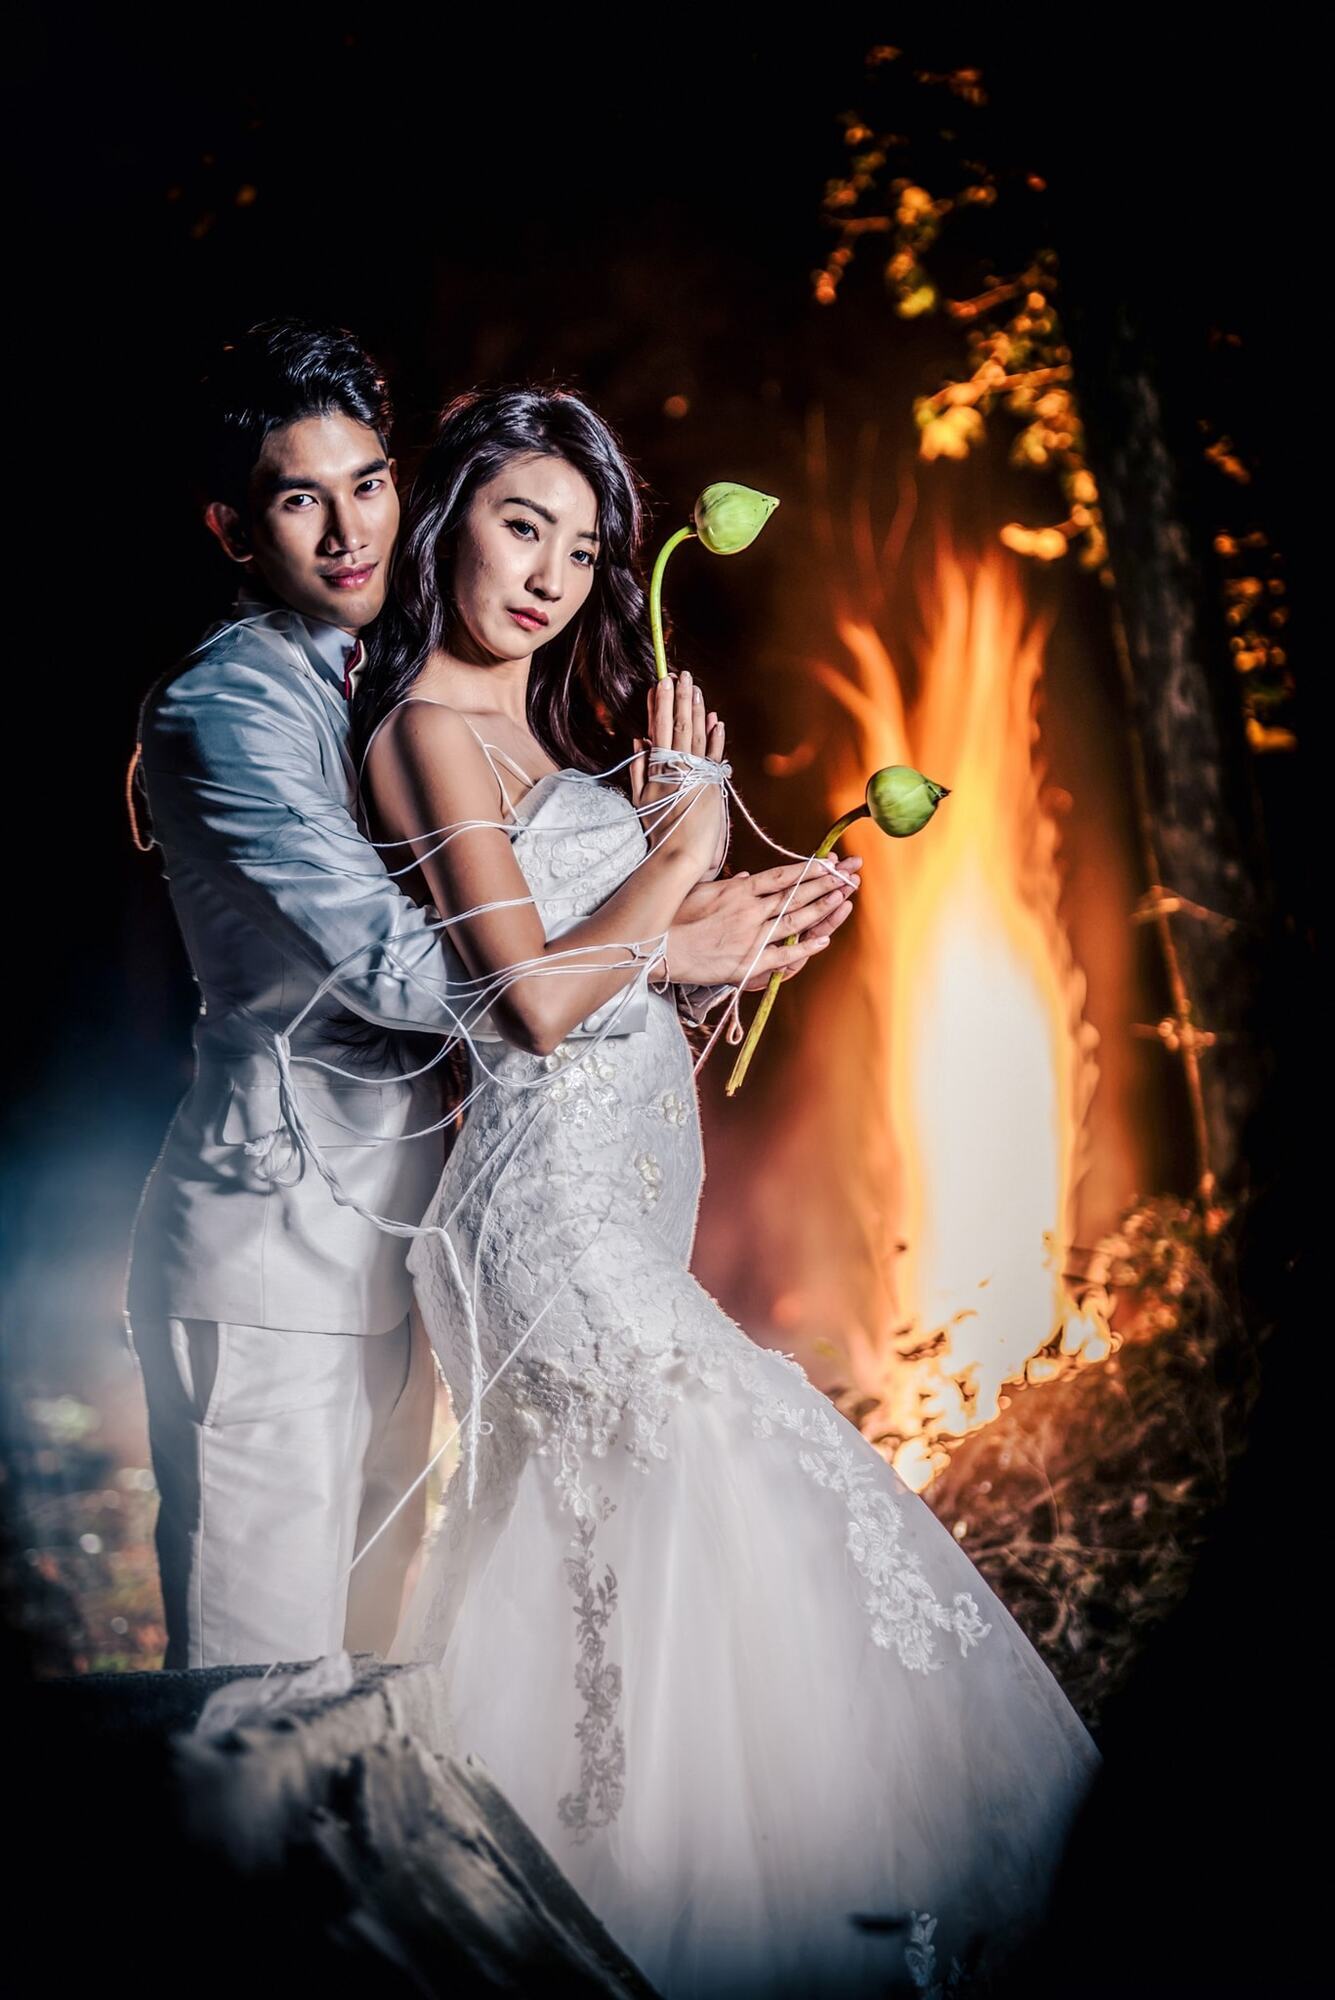 Пара з Таїланду влаштувала весільну фотосесію в труні й зімітувала кремацію: їм пригрозили прокляттям